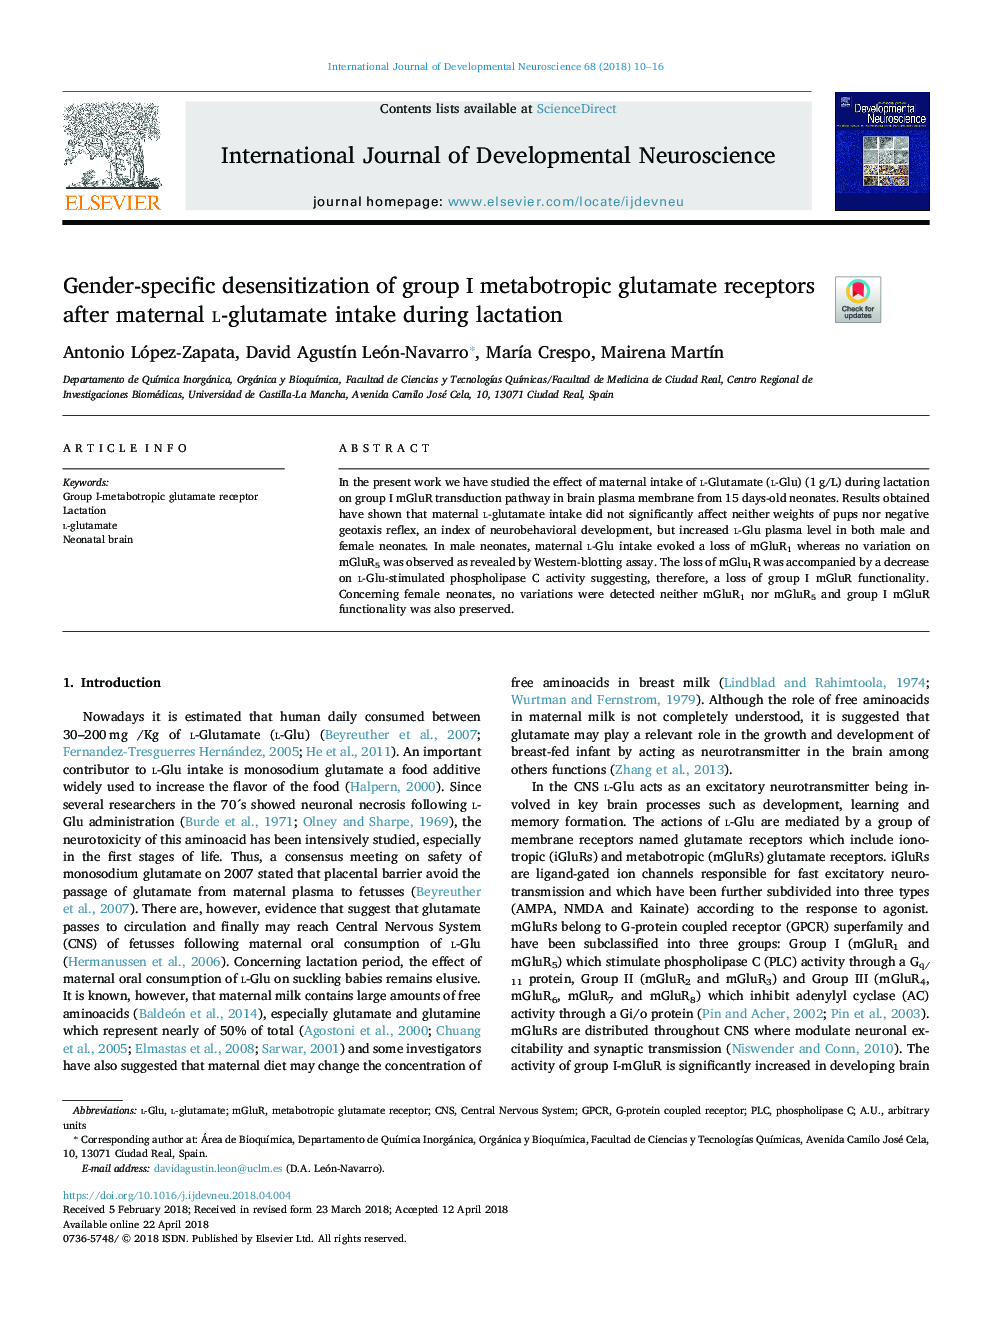 Gender-specific desensitization of group I metabotropic glutamate receptors after maternal l-glutamate intake during lactation